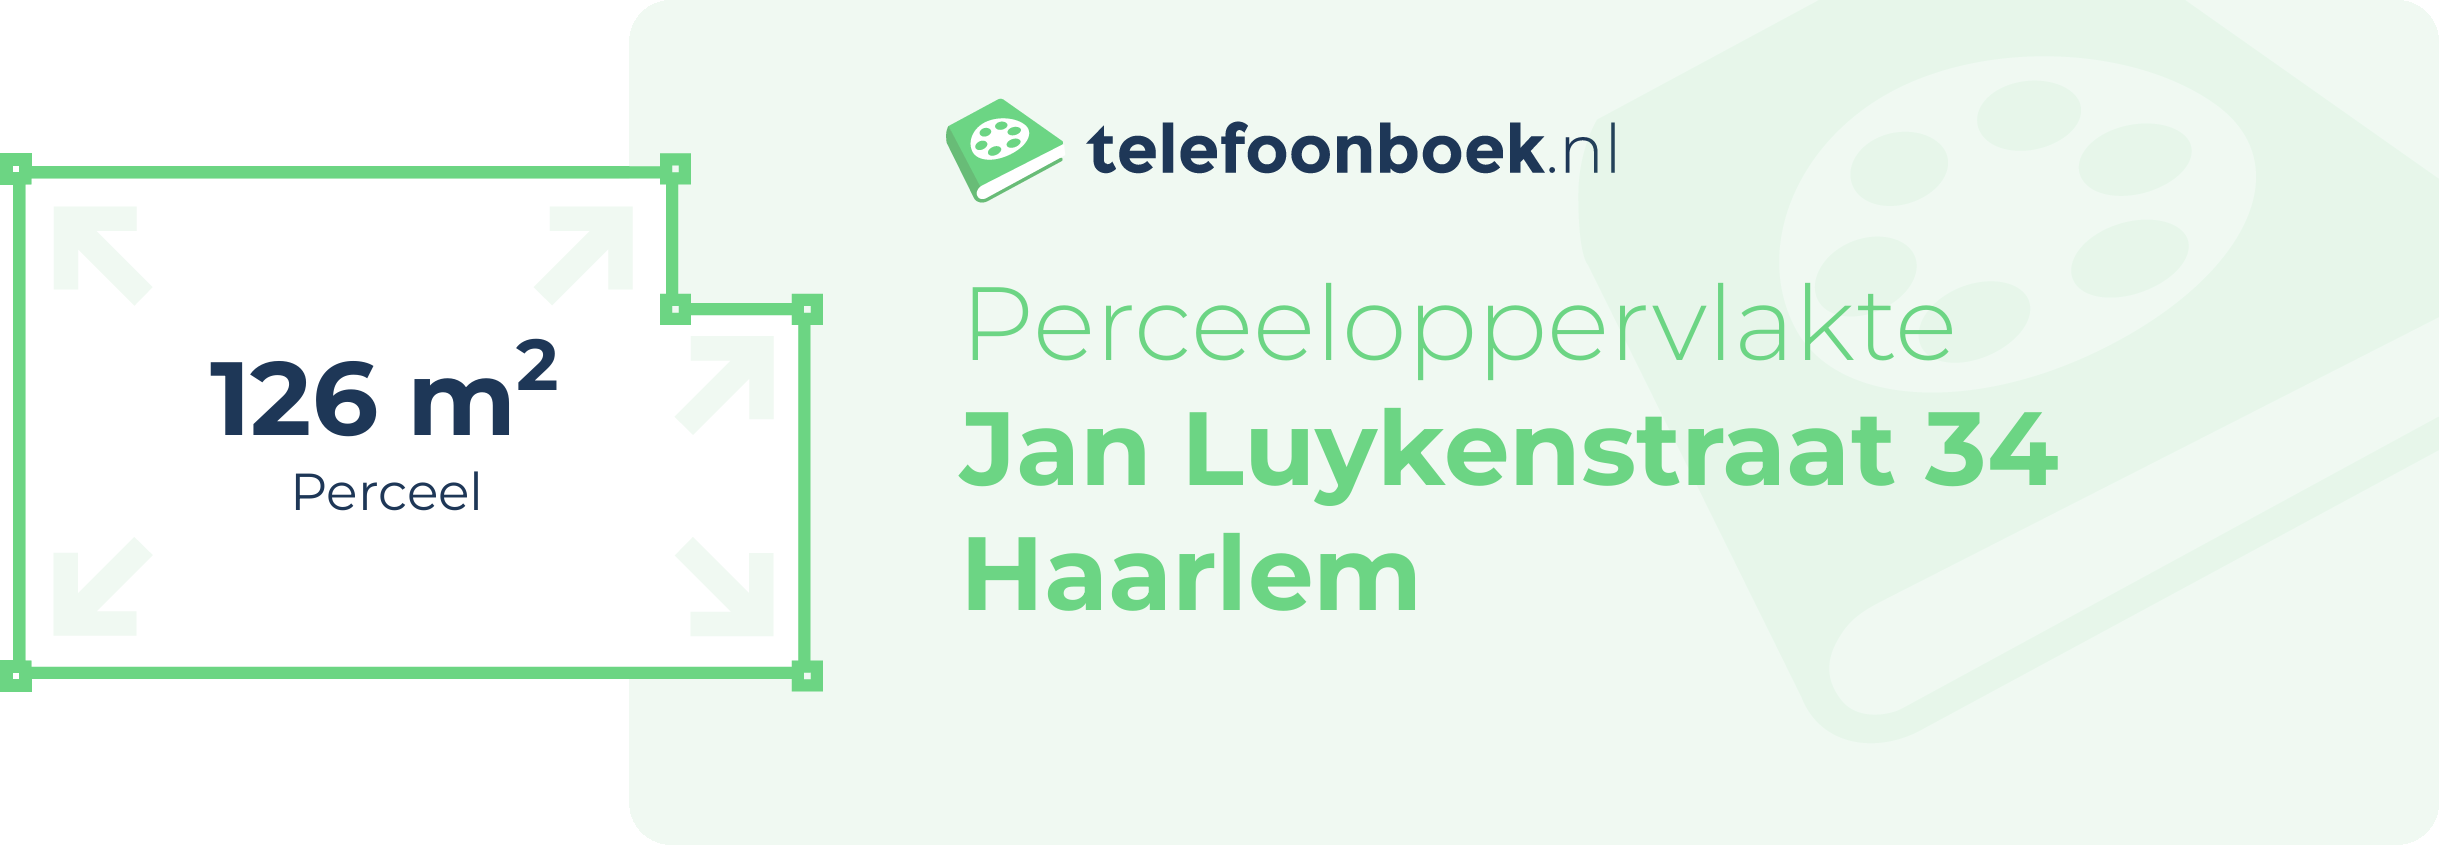 Perceeloppervlakte Jan Luykenstraat 34 Haarlem